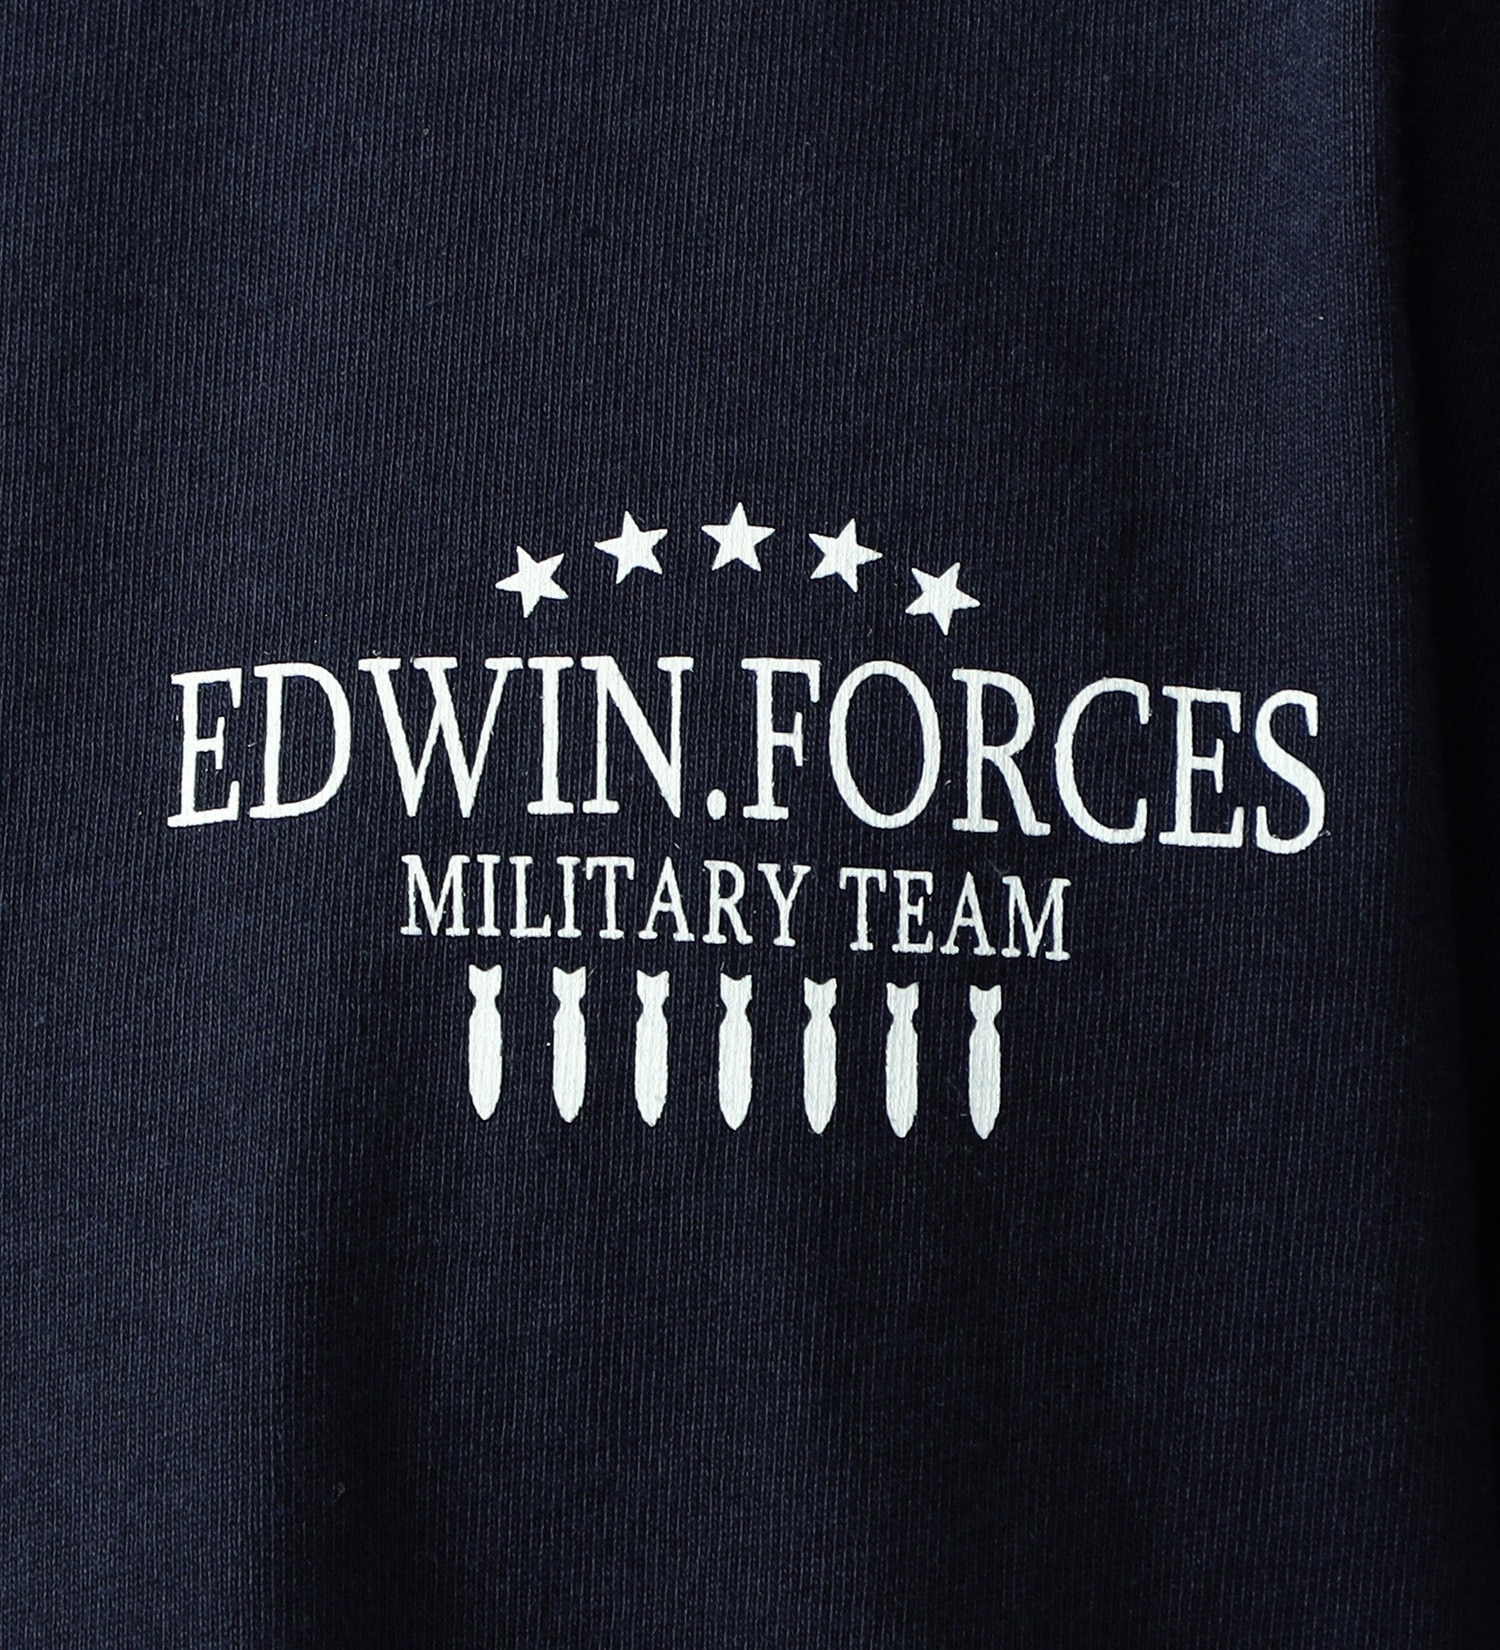 EDWIN(エドウイン)のミリタリーバックプリント半袖Tシャツ【アウトレット店舗・WEB限定】|トップス/Tシャツ/カットソー/メンズ|ネイビー